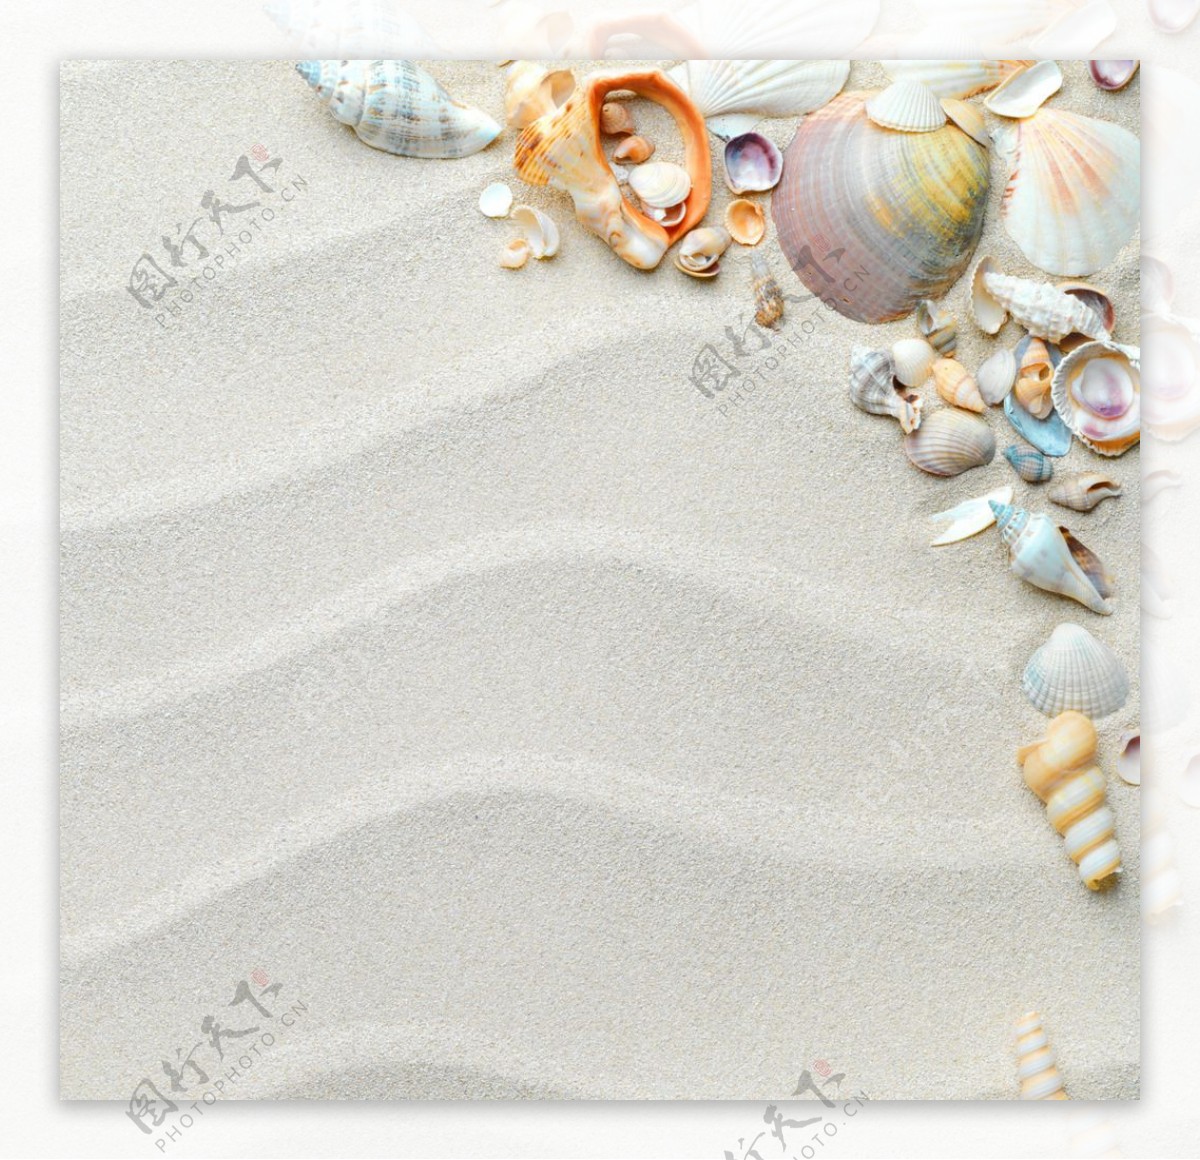 唯美沙滩贝壳图片